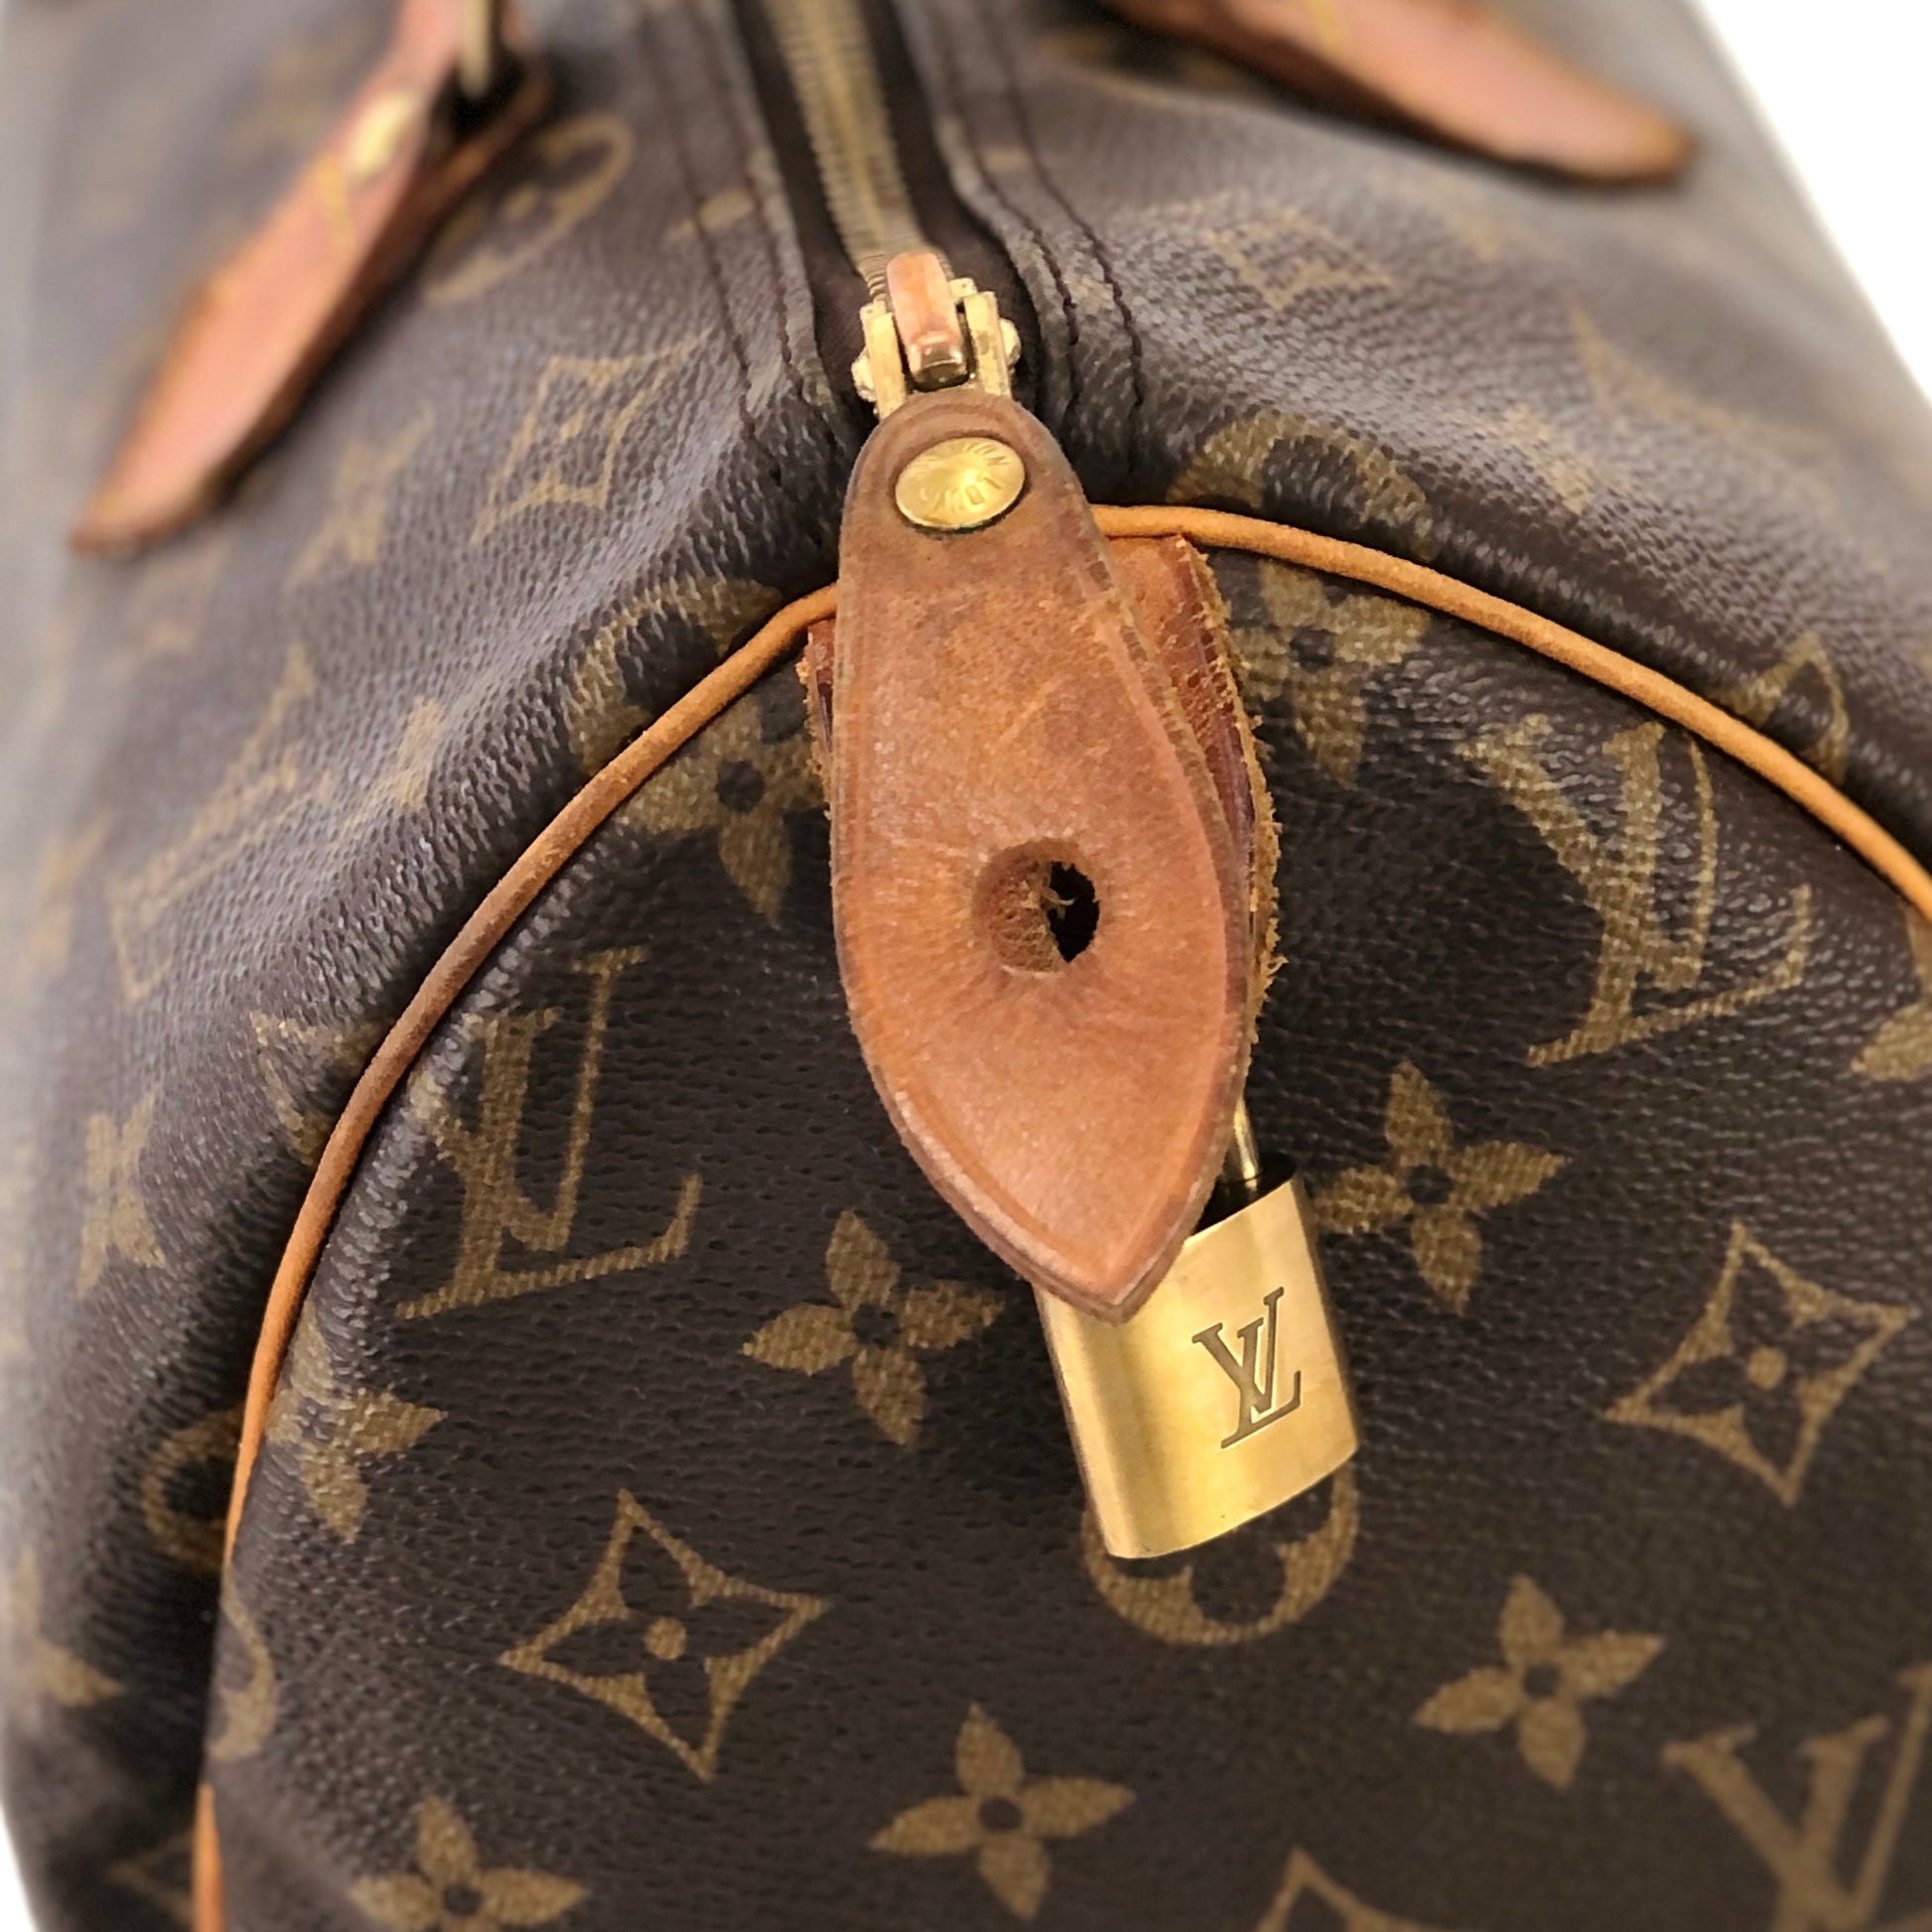 Louis Vuitton, Bags, Vintage Louis Vuitton Speedy 35 Satchel Purse  Doctors Bag